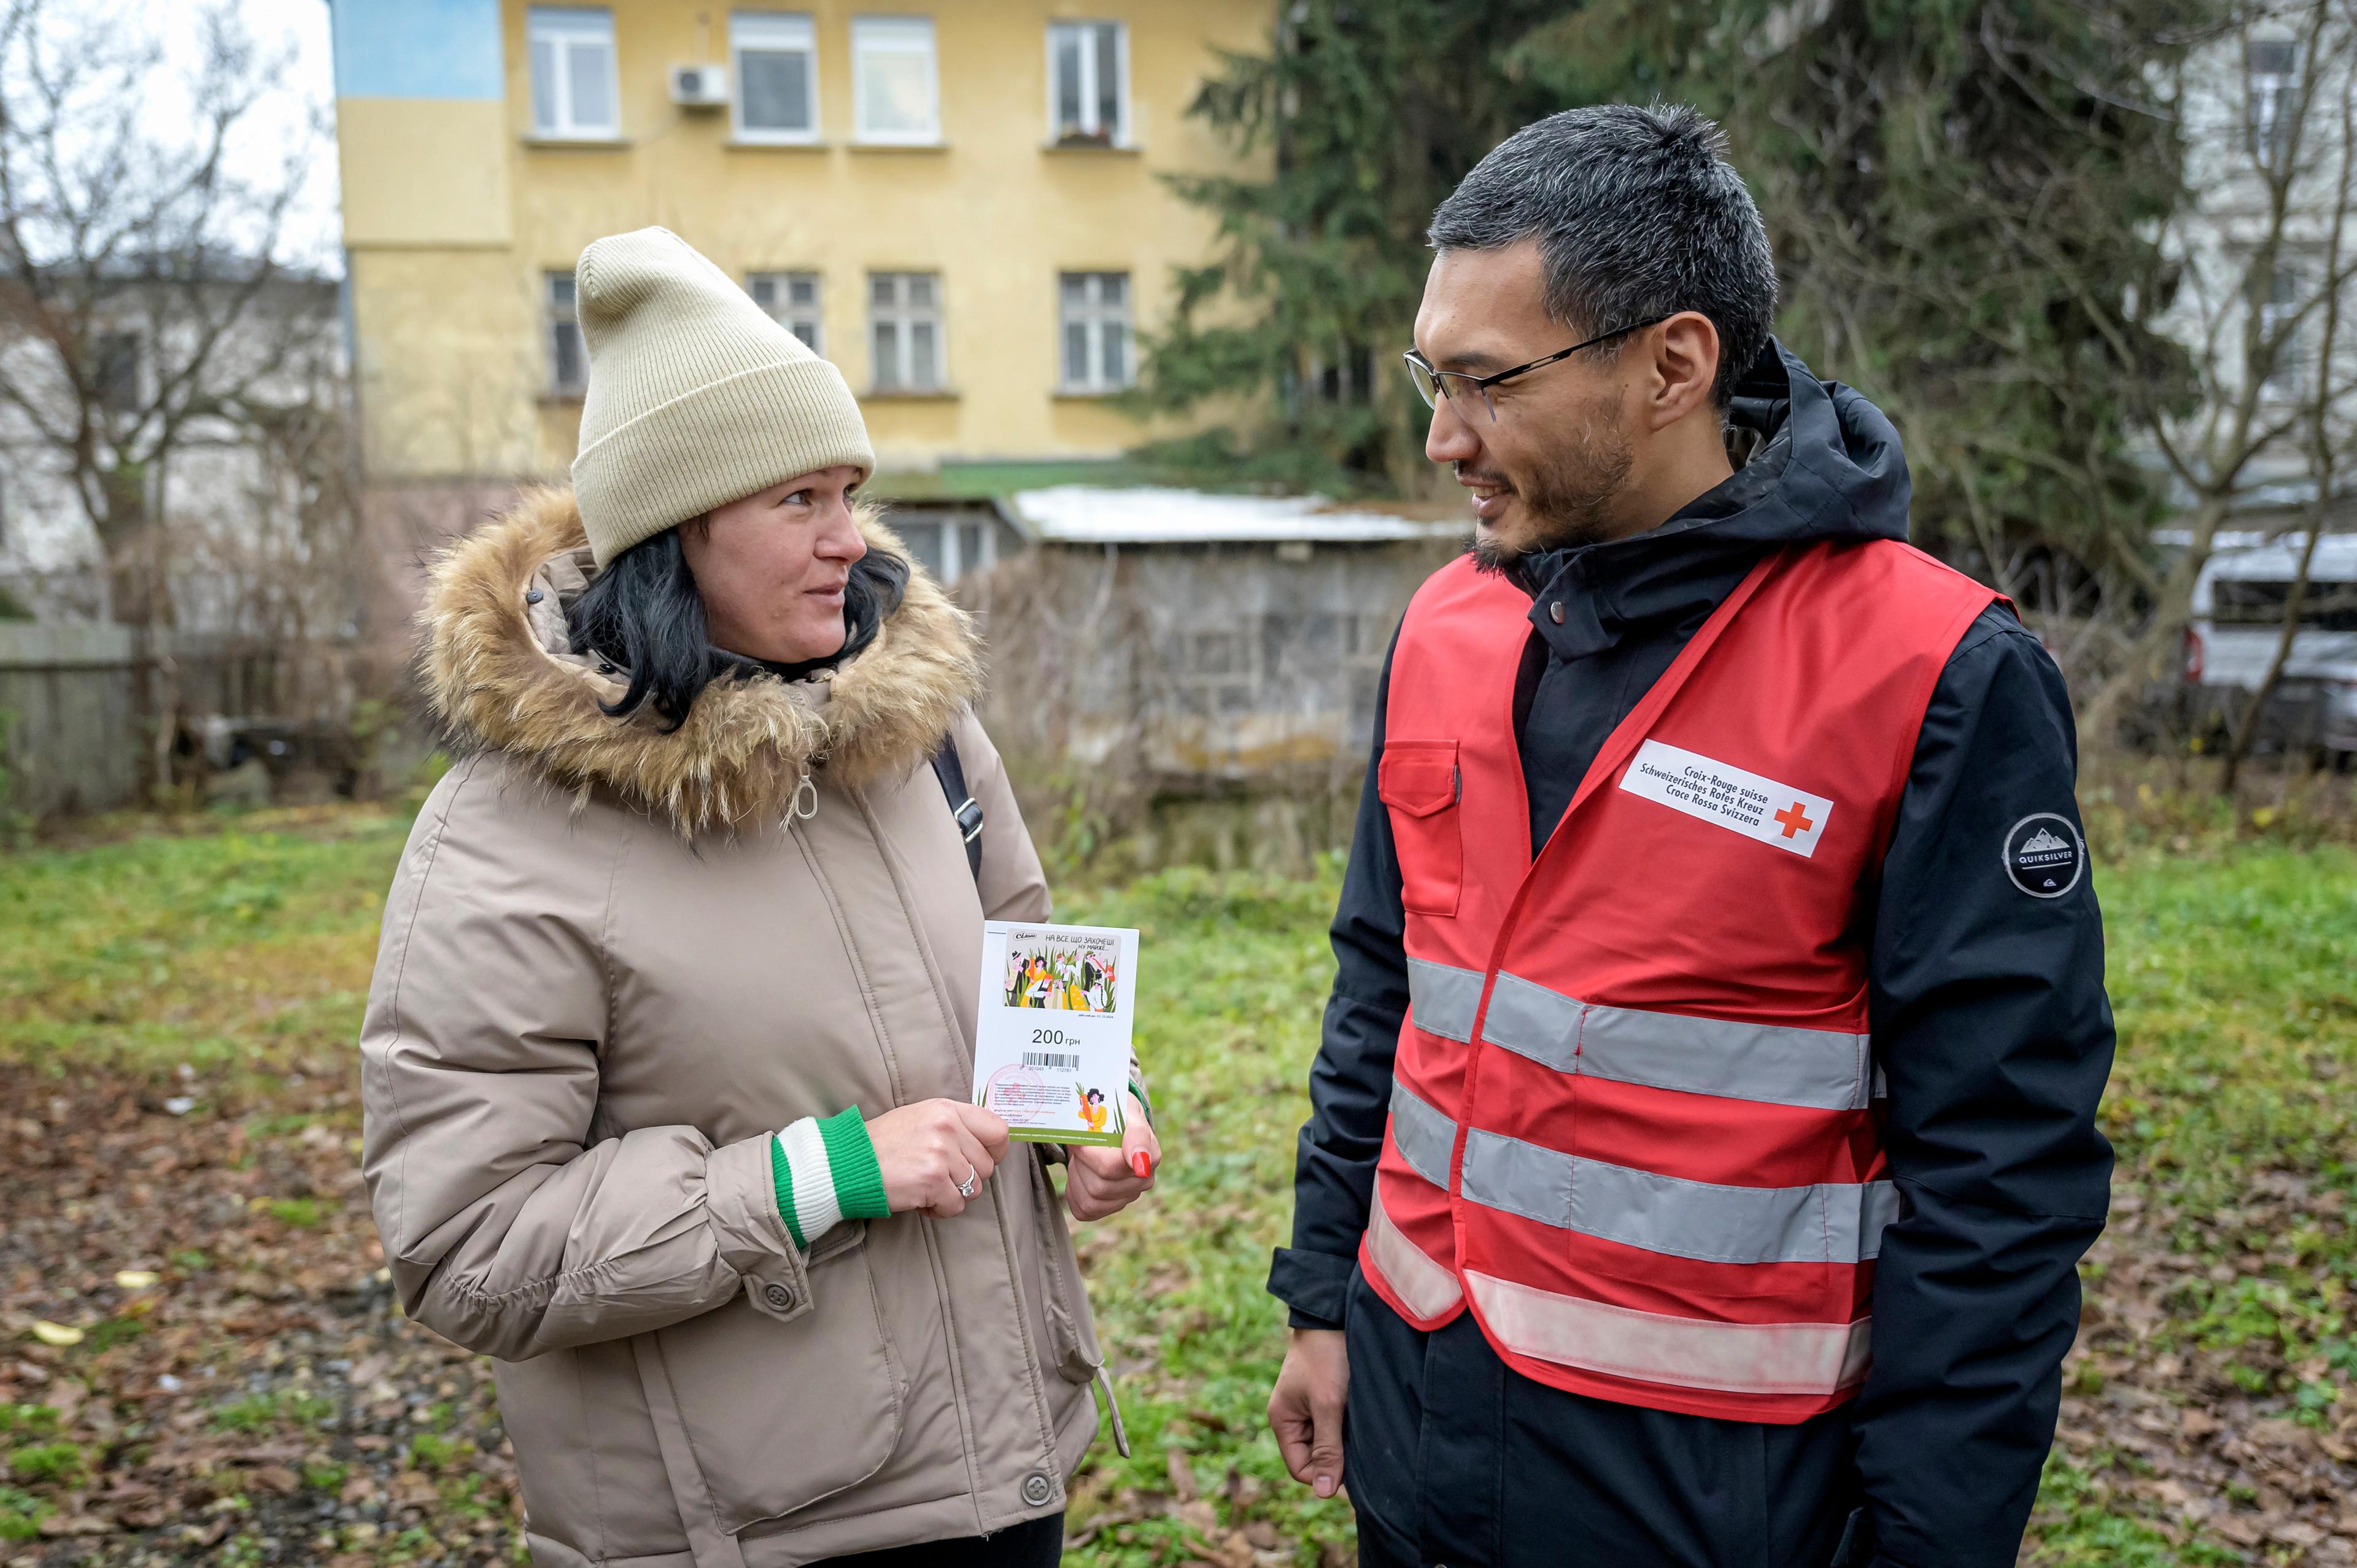 Cash Programm für Intern Vertriebene in Iwano-Frankiwsk. Das Schweizerische Rote Kreuz unterstützt das Ukrainische Rote Kreuz im Westen des Landes. CASH-Begünstigte Olga Degferova (34) mit SRK Mitarbeiter Bektur Imankulov (36).